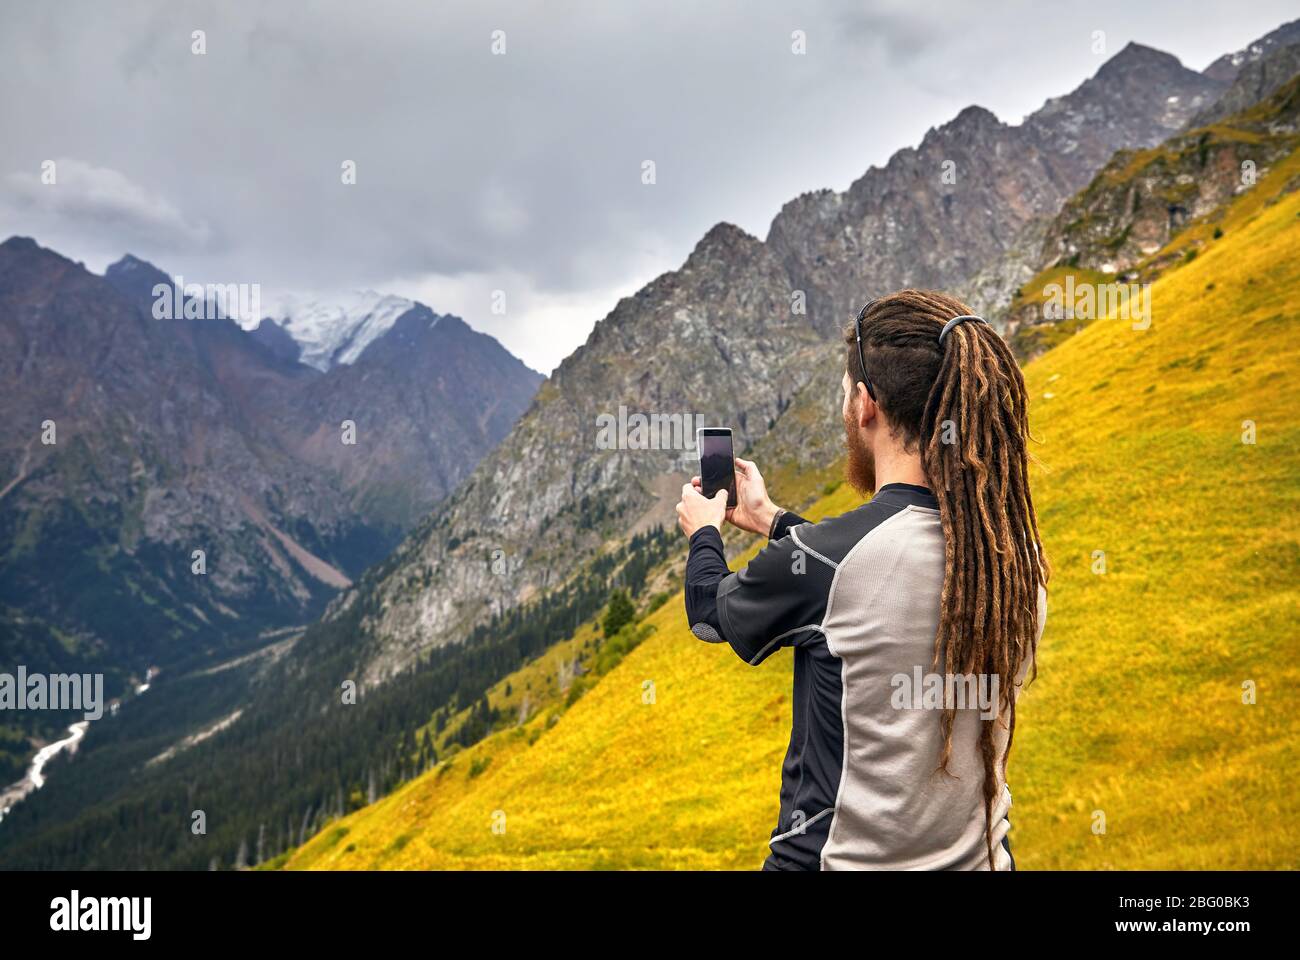 Uomo con dreadlocks prendendo foto con il suo telefono cellulare in montagna. Stile di vita viaggio avventura concetto vacanze attive outdoor Foto Stock